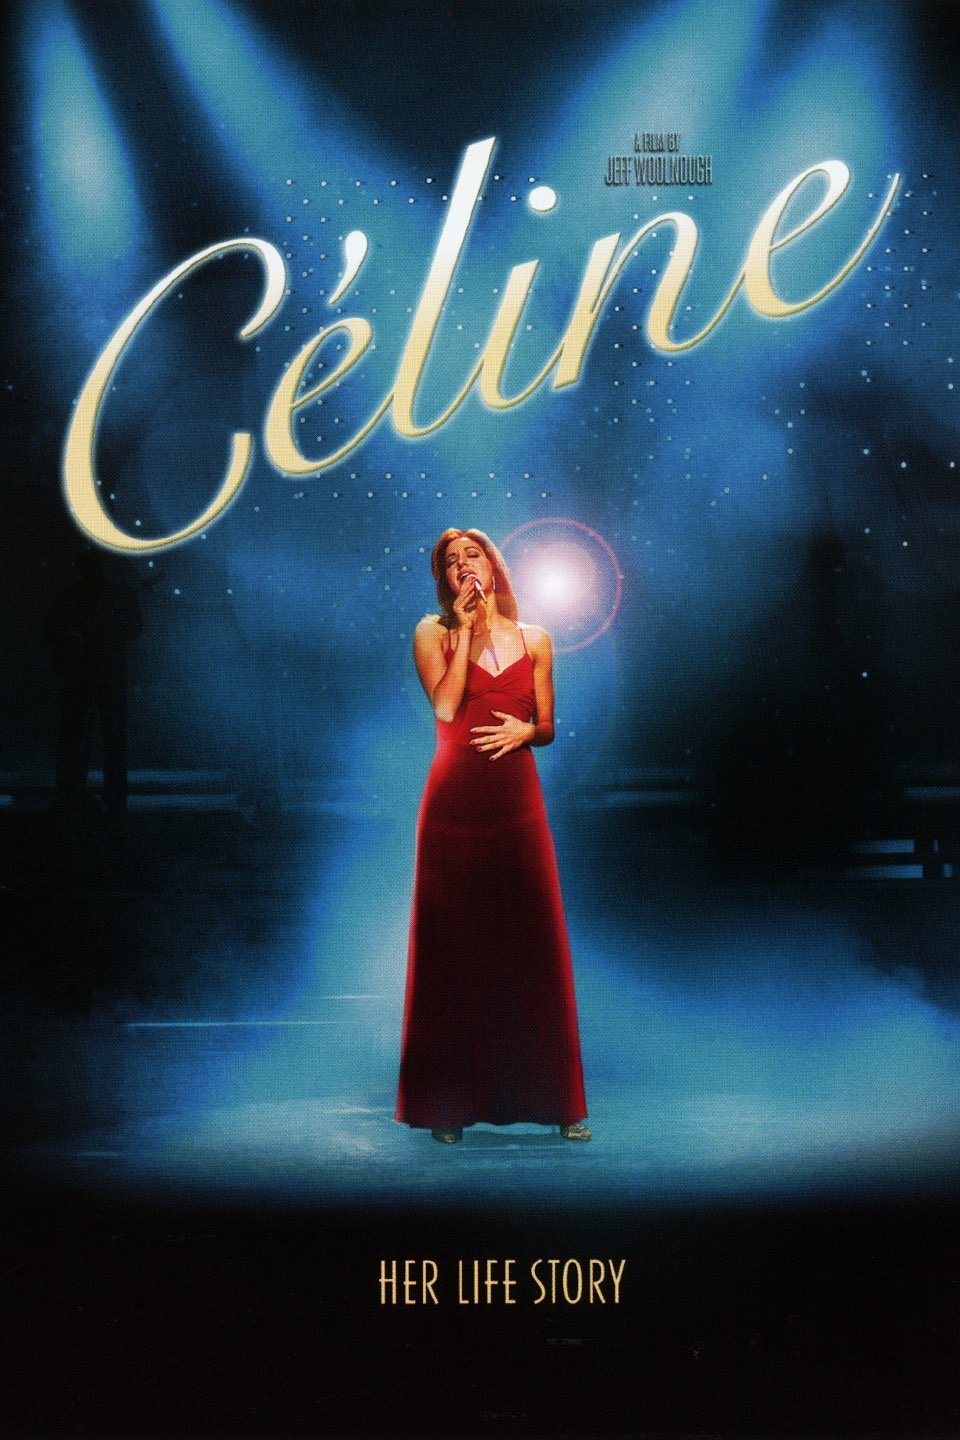 L'affiche du film Céline